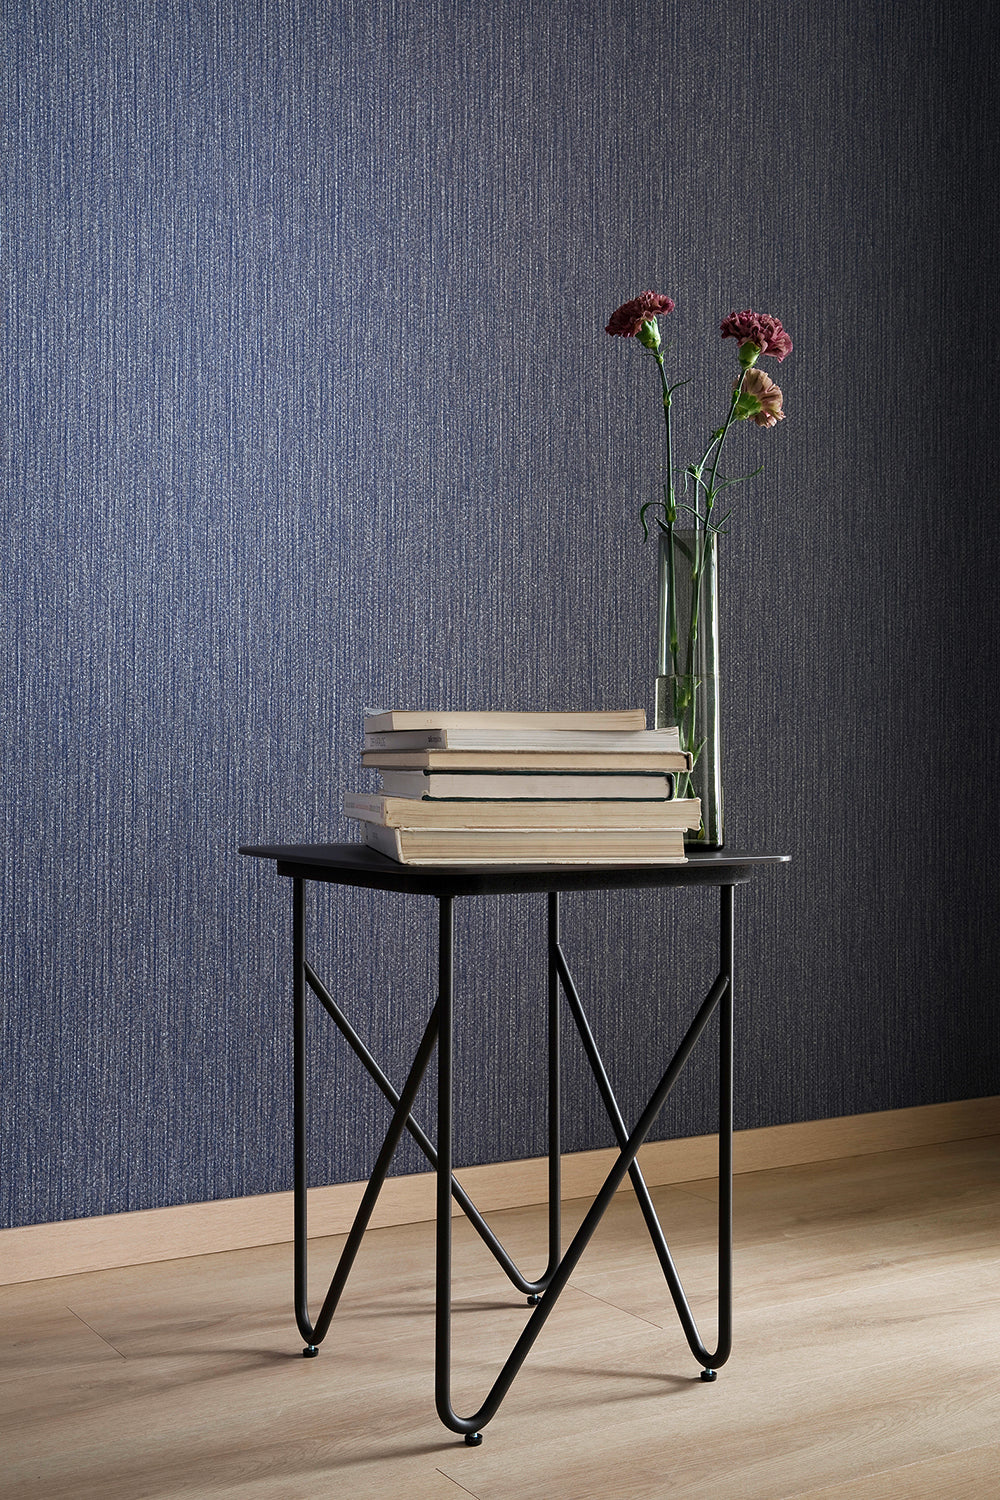 Schoner Wohnen New Spirit - Ambient bamboo weave plain wallpaper Marburg    